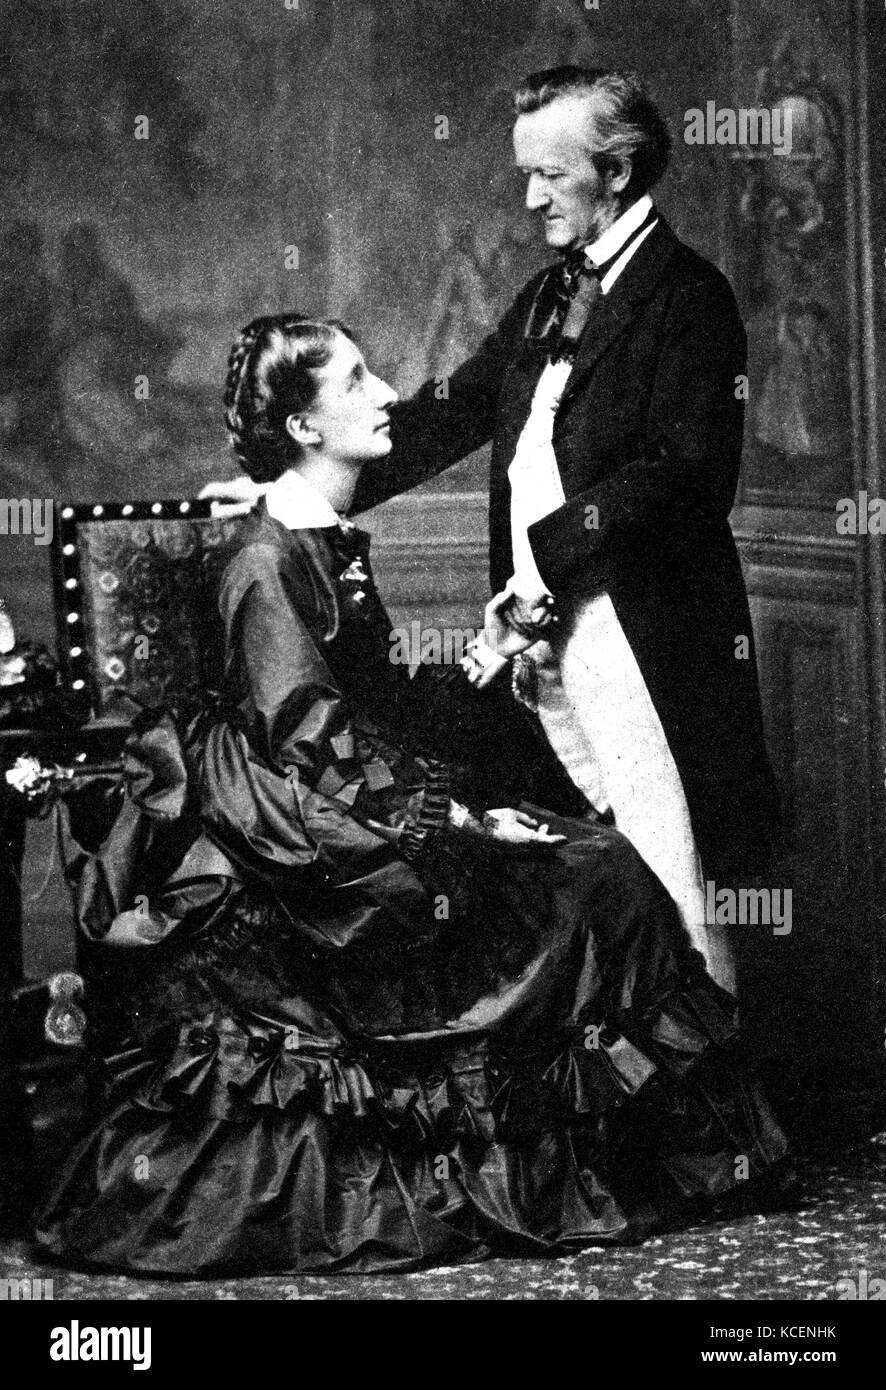 Foto von deutschen Komponisten Wilhelm Wagner (1813-1883) und seiner zweiten Frau Cosima Wagner (1837-1930), die zusammen die Bayreuther Festspiele gegründet. Vom 19. Jahrhundert Stockfoto